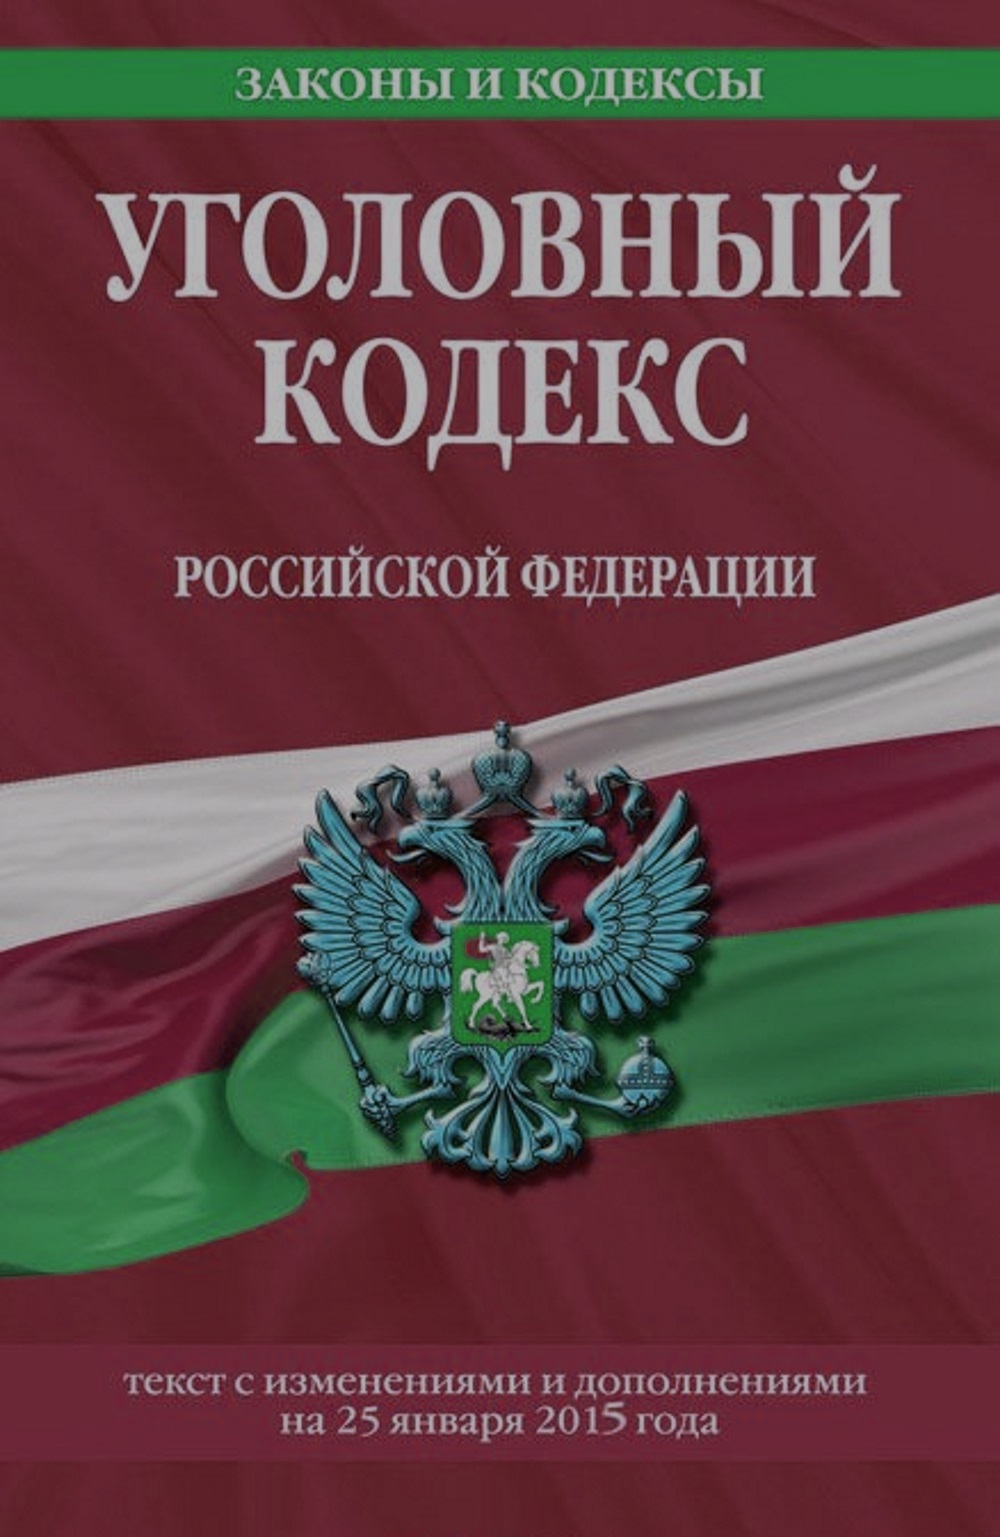 Изображение уголовного кодекса Российской Федерации